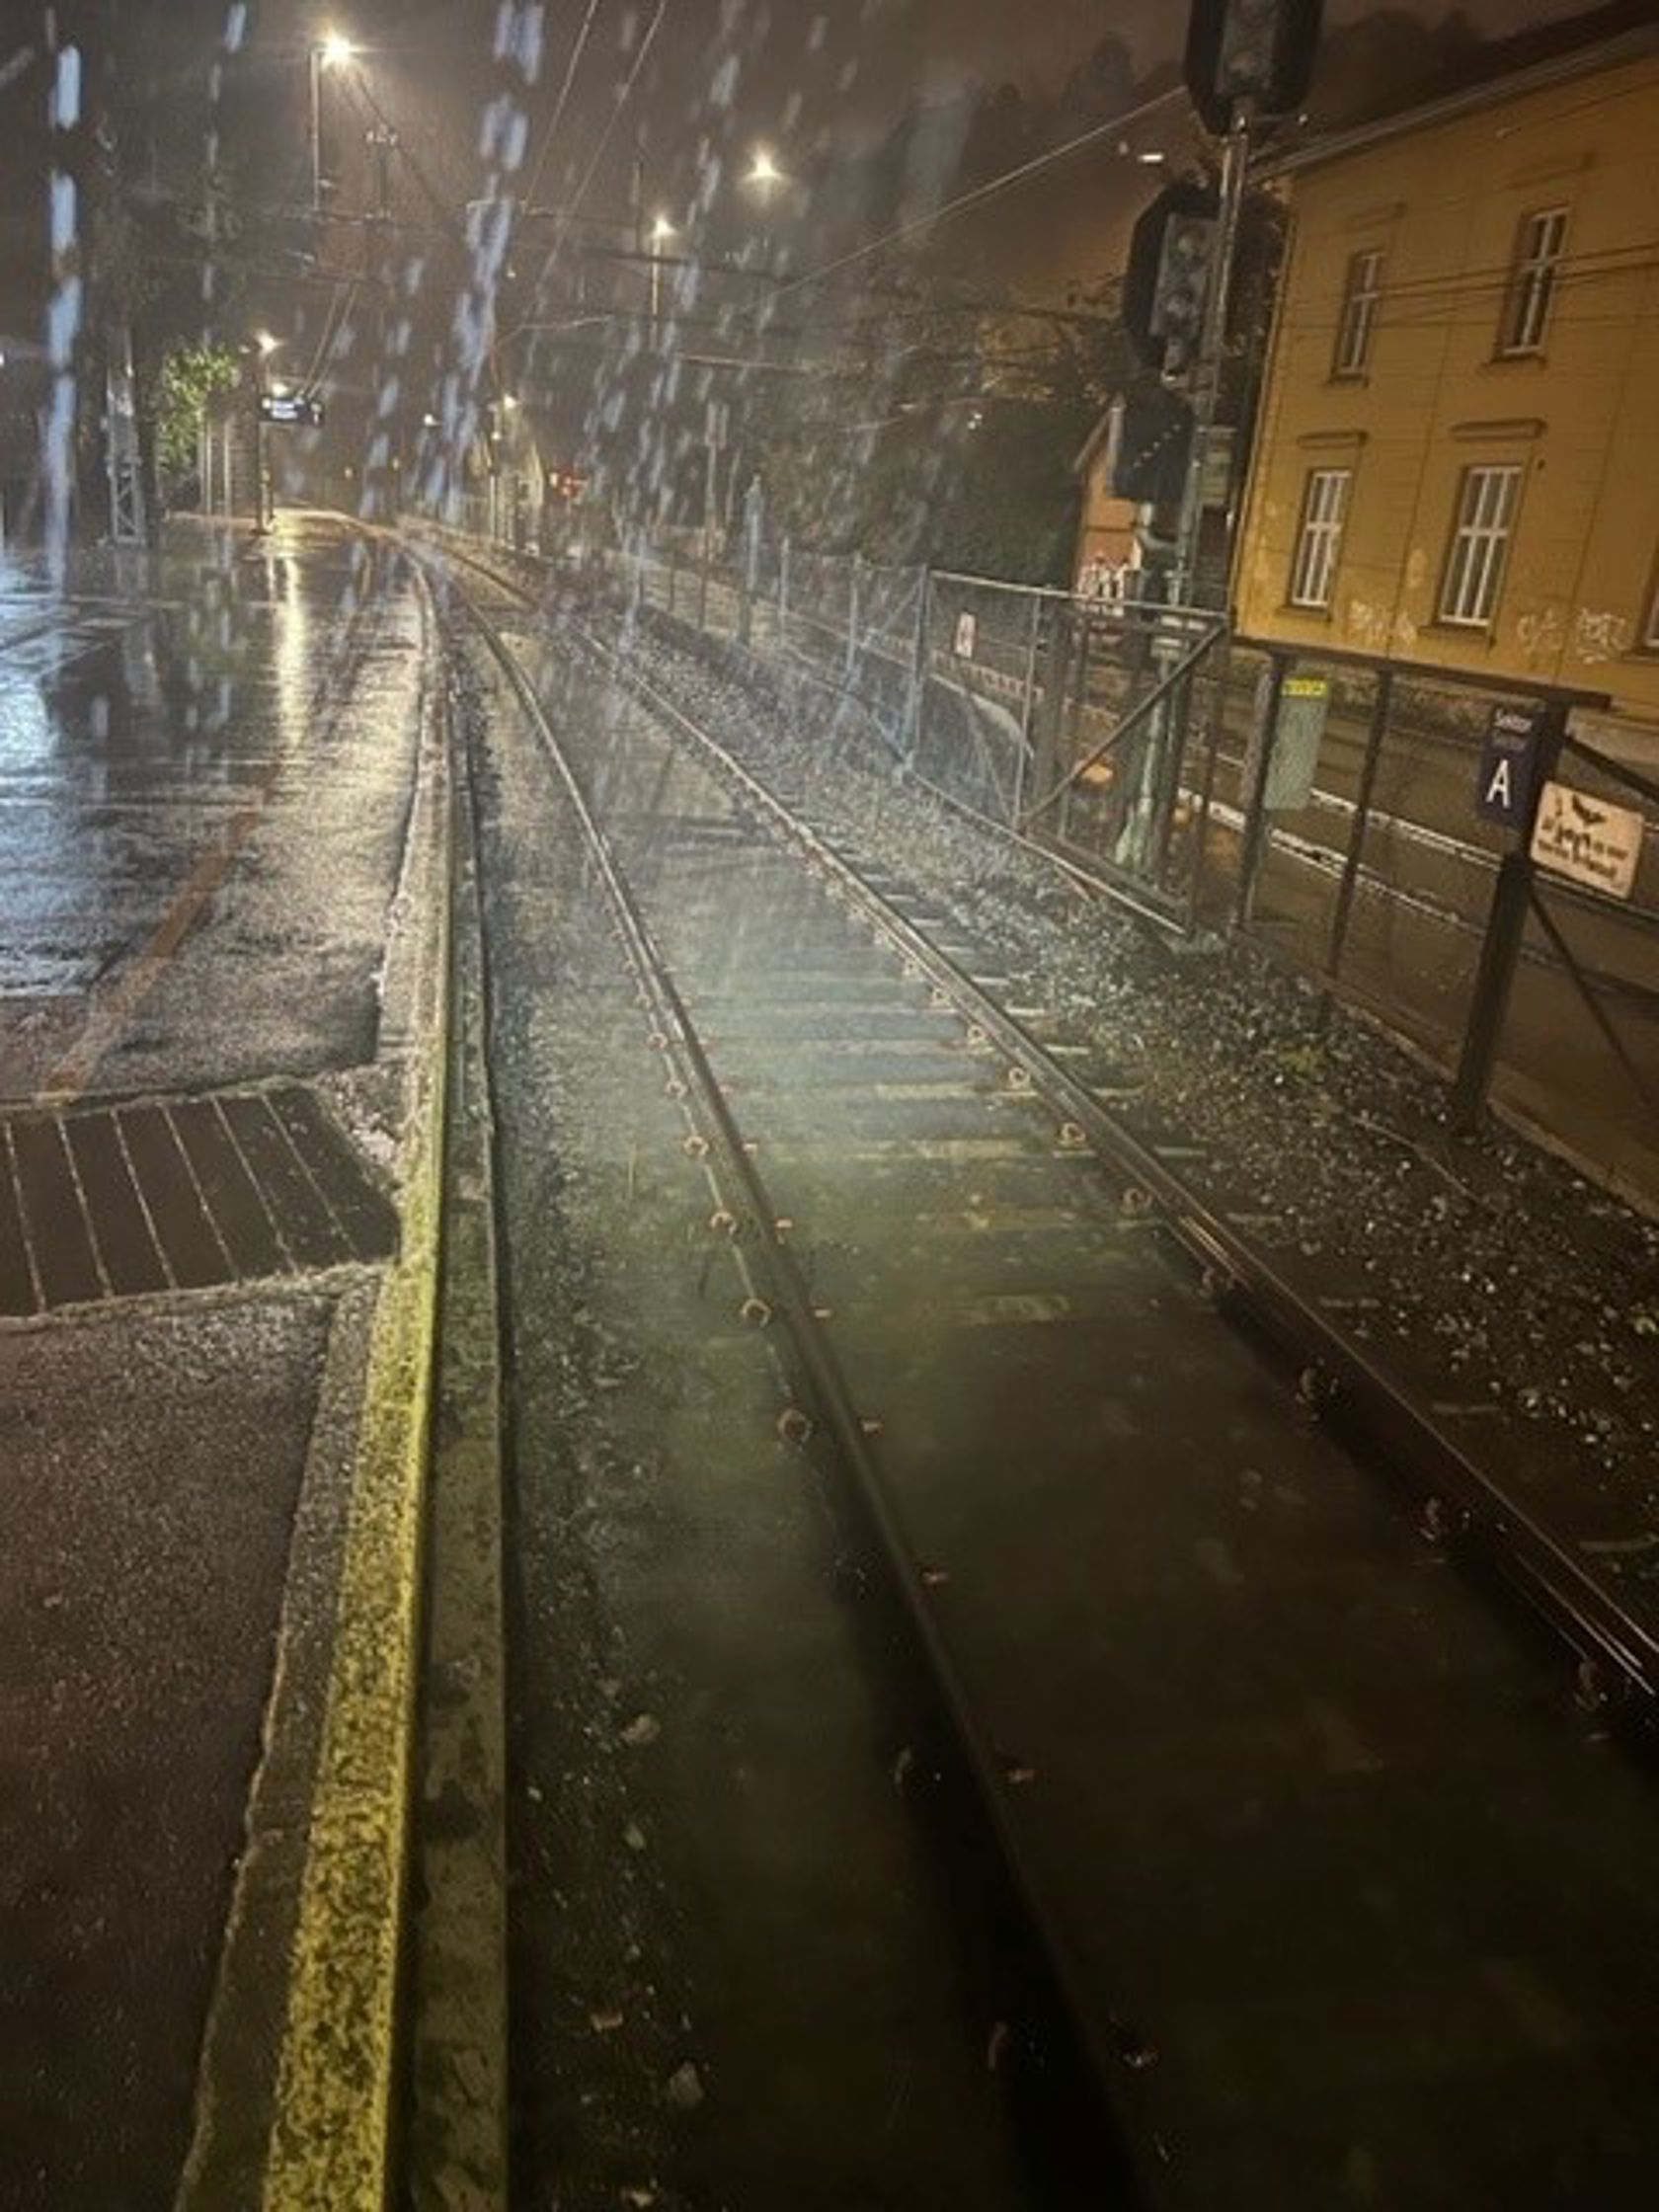 Jernbanespor under vann på Bryn stasjon.